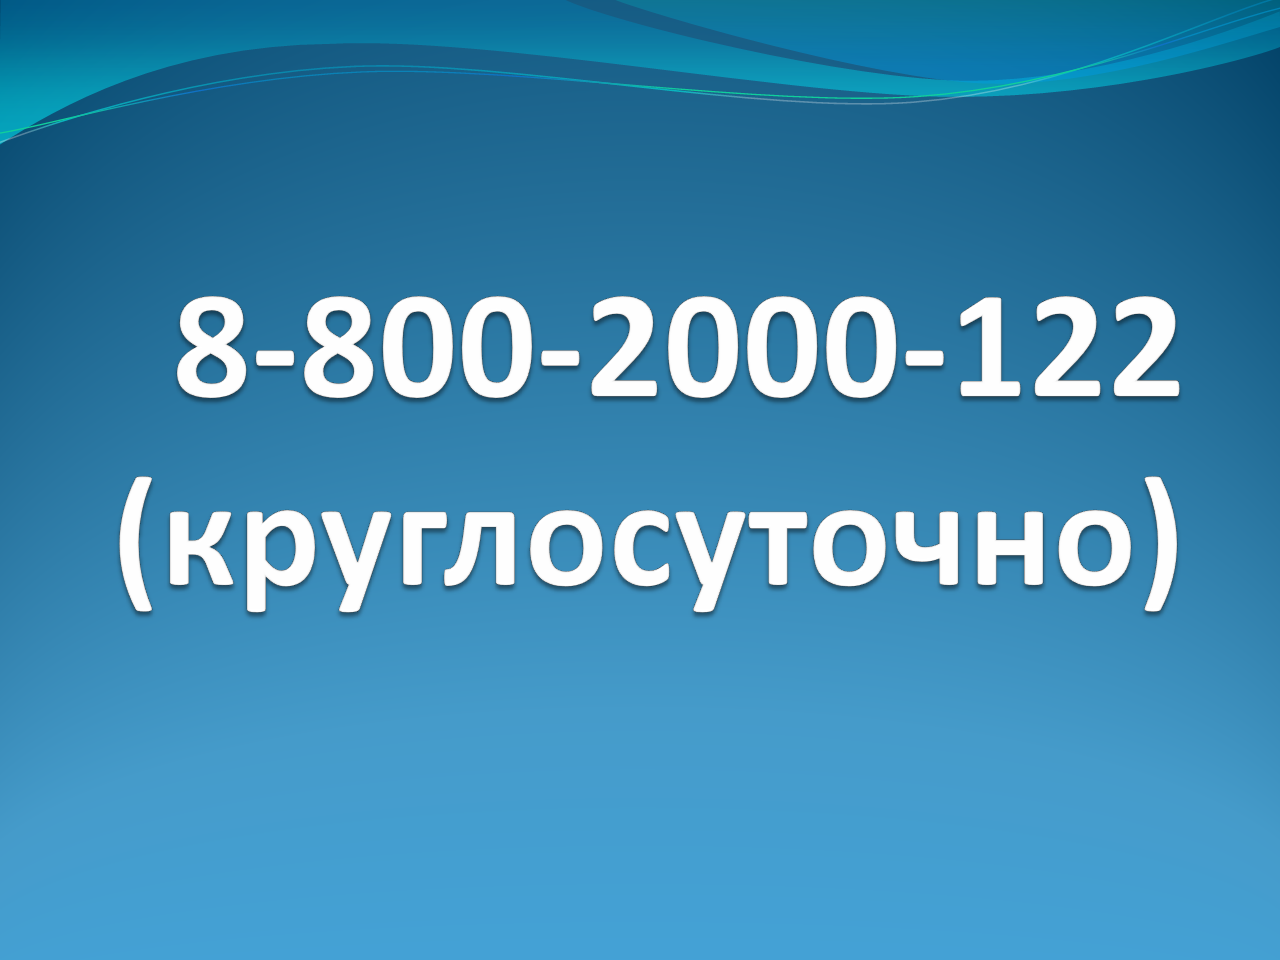 Единый общероссийский номер детского телефона доверия: